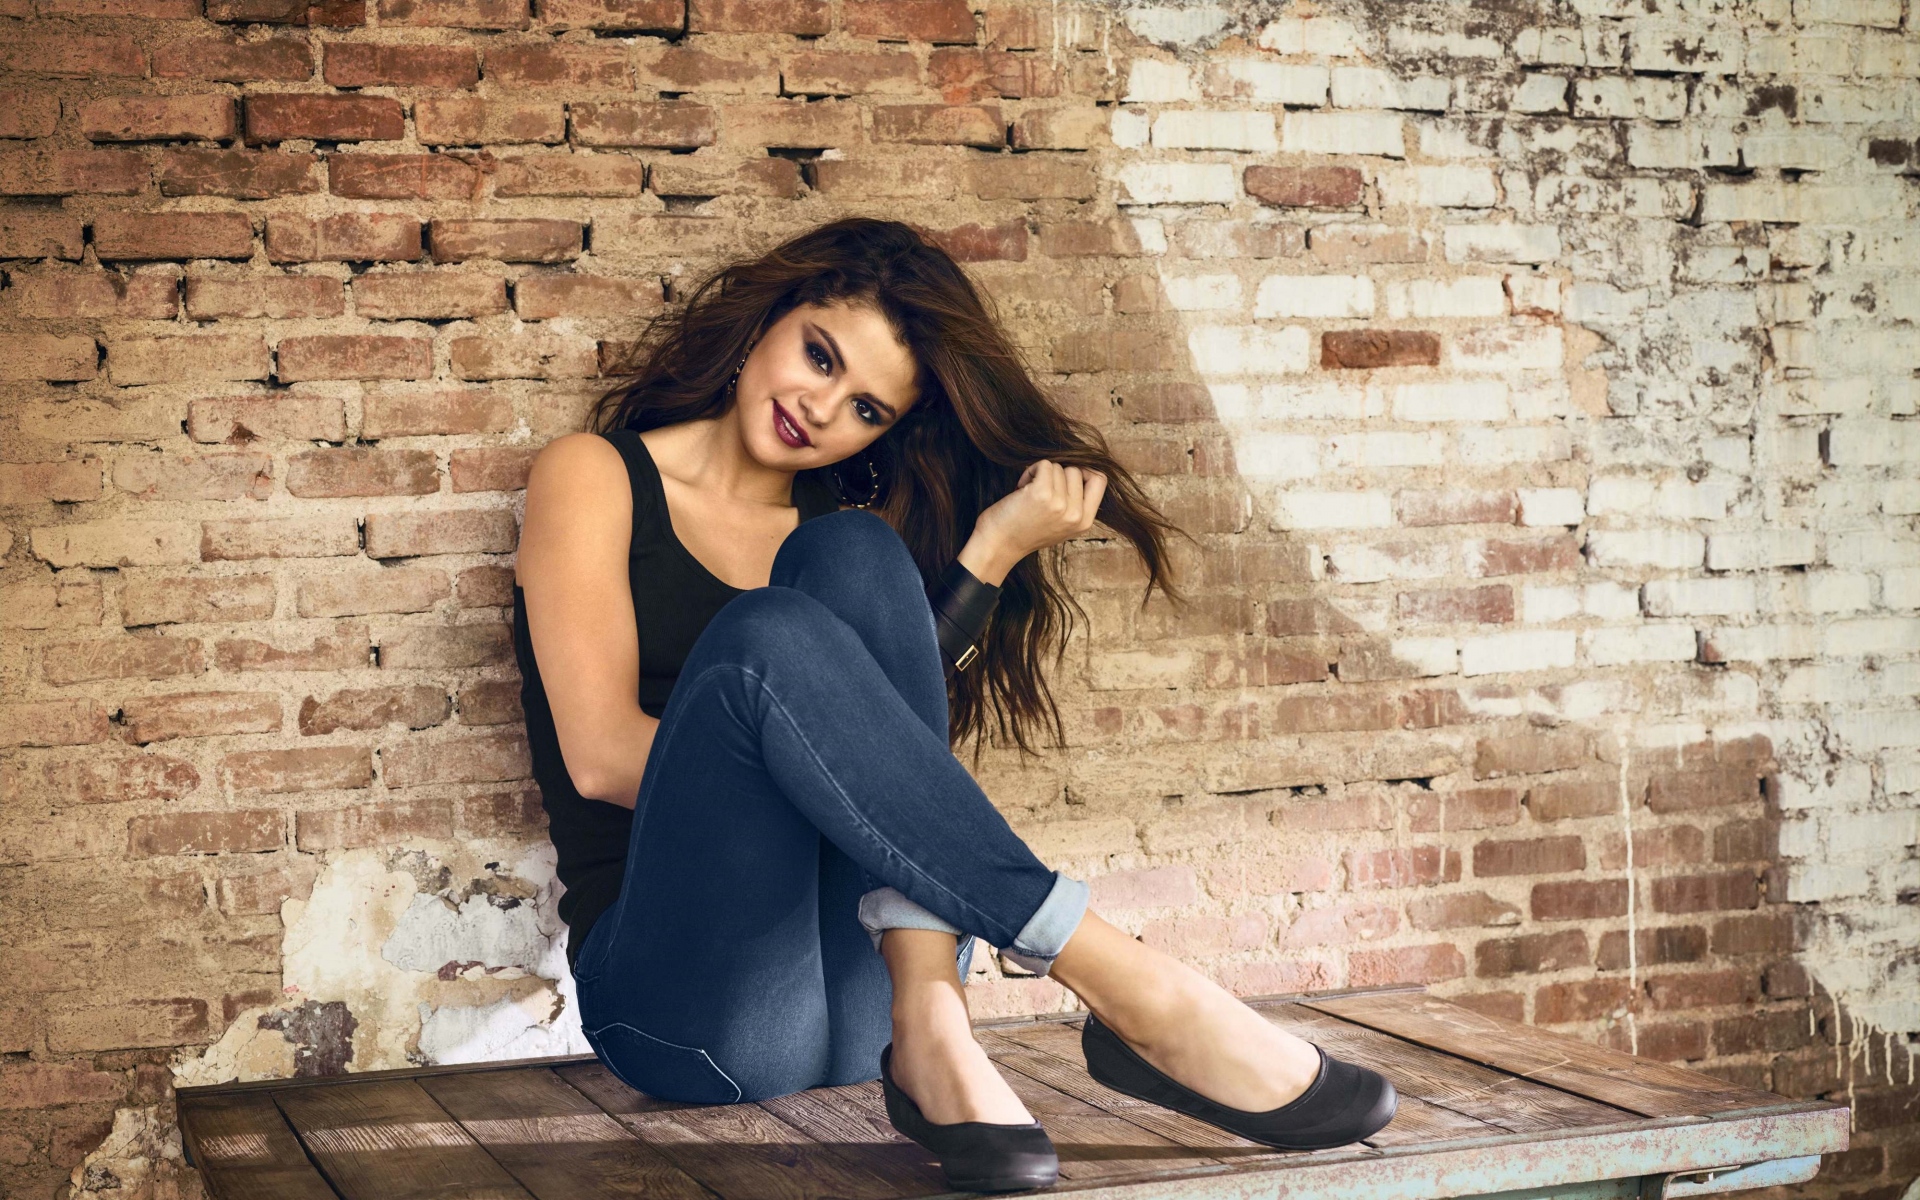 Картинки Selena gomez, брюнетка, знаменитость, улыбка фото и обои на рабочий стол